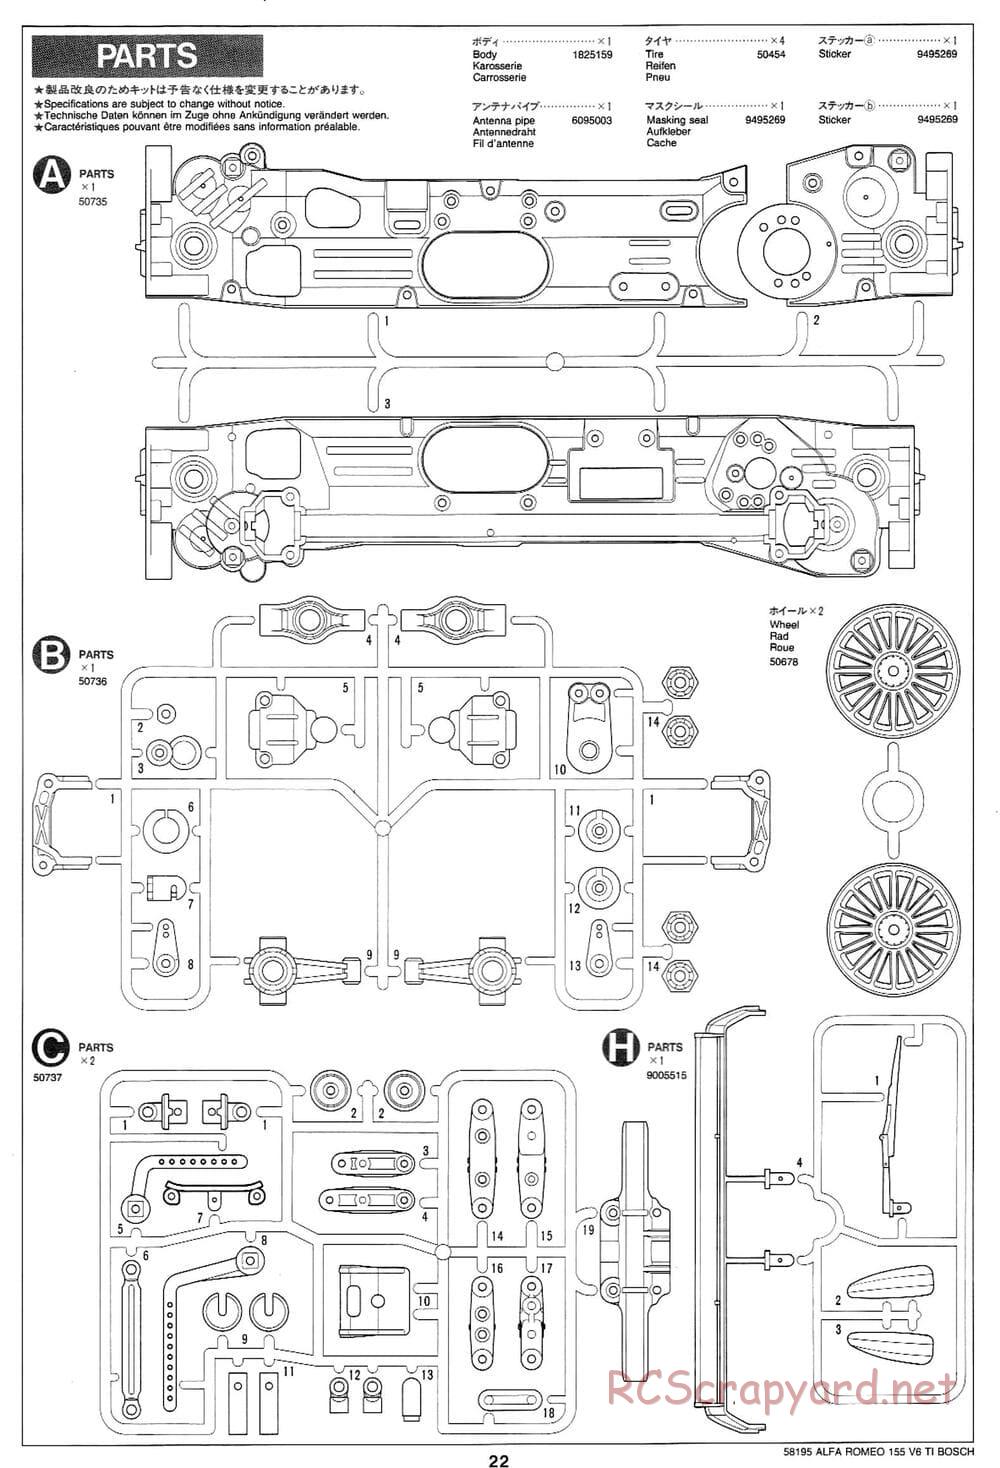 Tamiya - Alfa Romeo 155 V6 TI BOSCH - TL-01 Chassis - Manual - Page 22